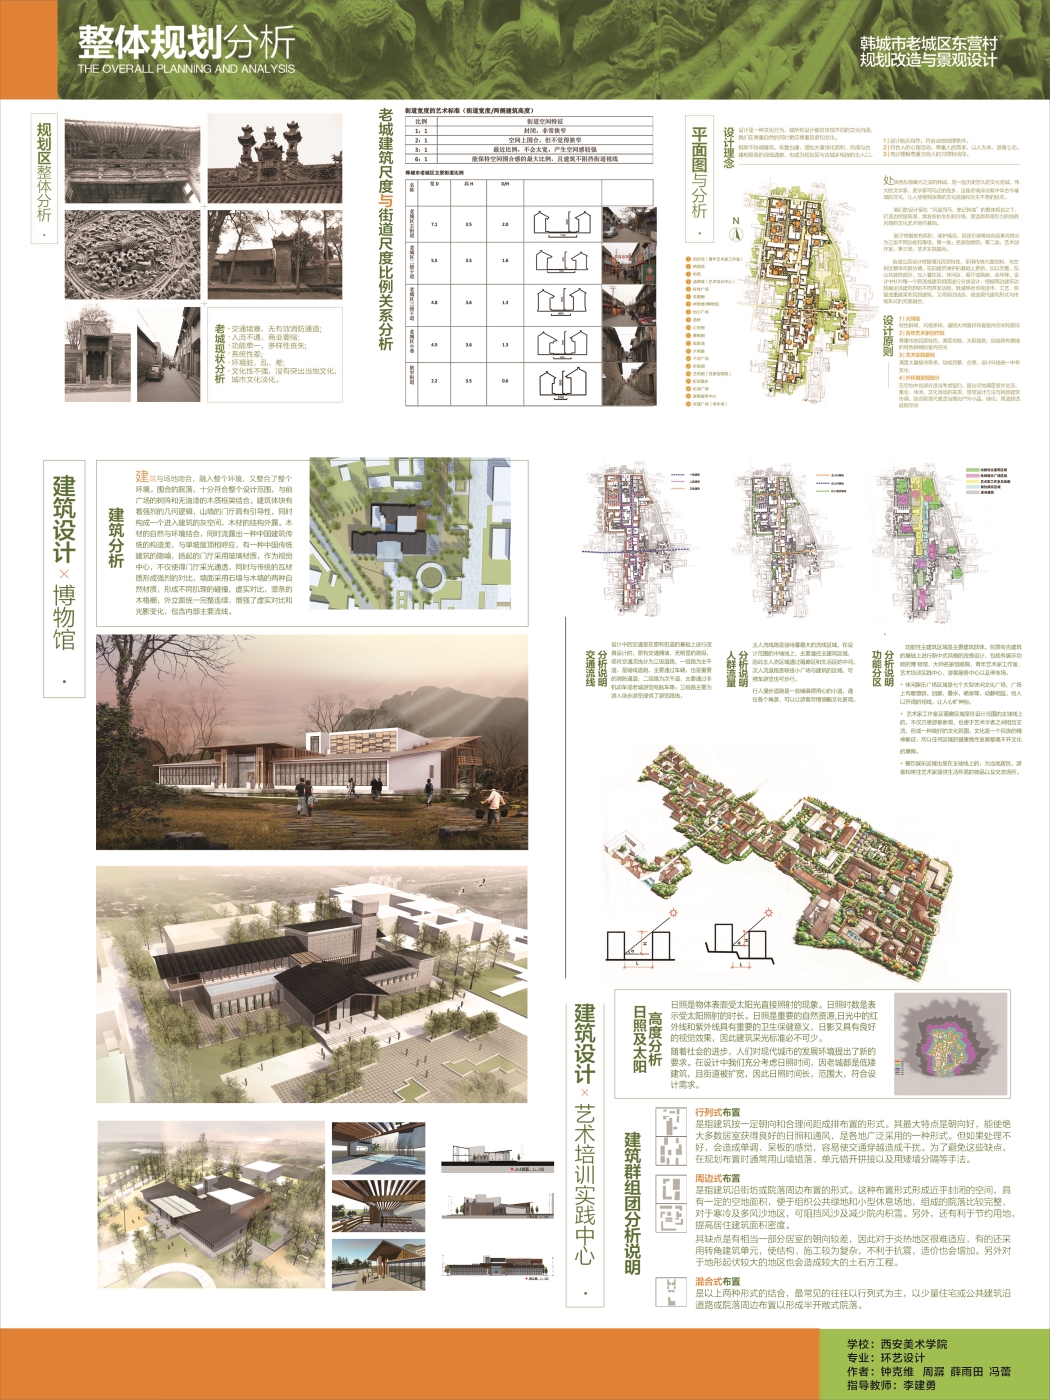 韩城市老城区东营村规划改造与景观设计-2